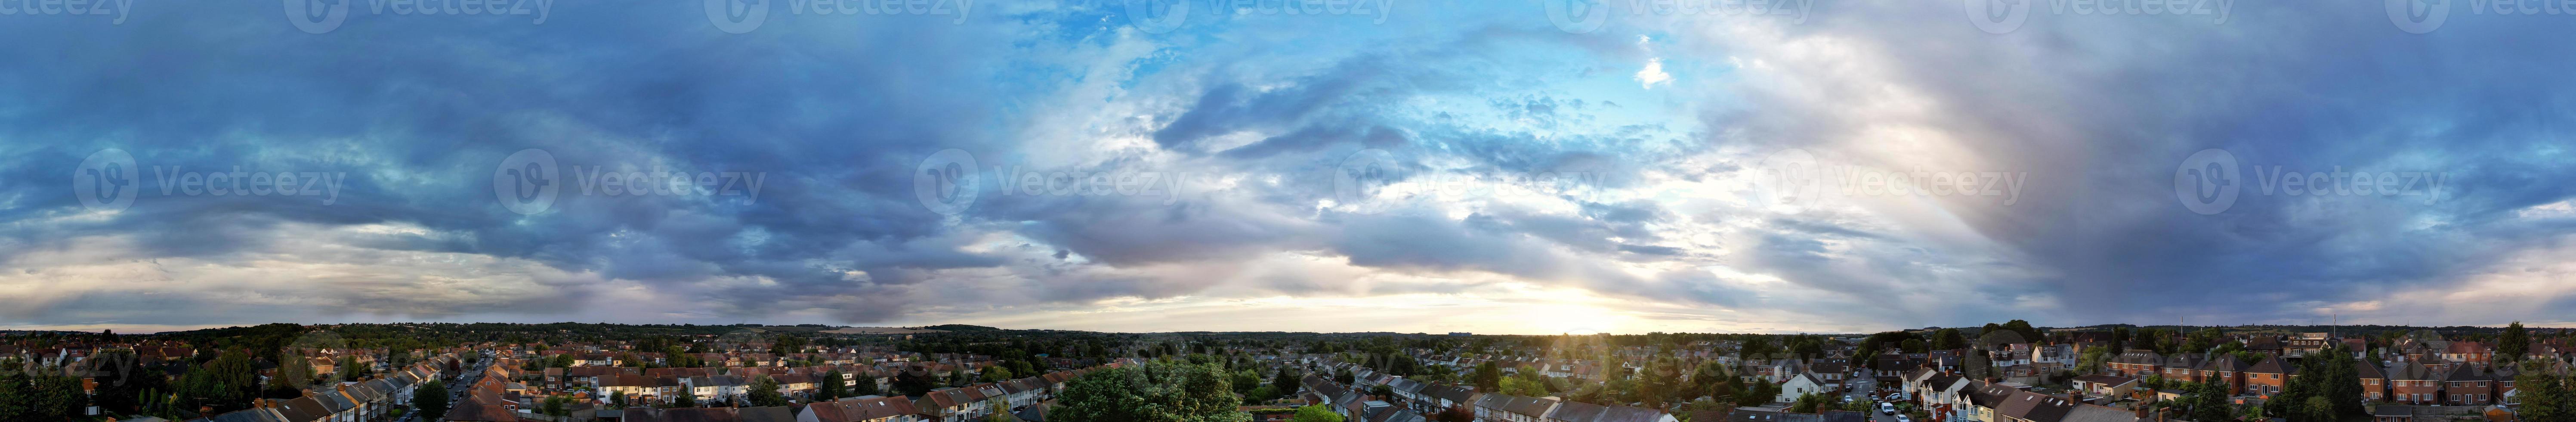 schöne luftpanoramasicht auf wolken bei sonnenuntergang über der stadt luton in england großbritannien foto